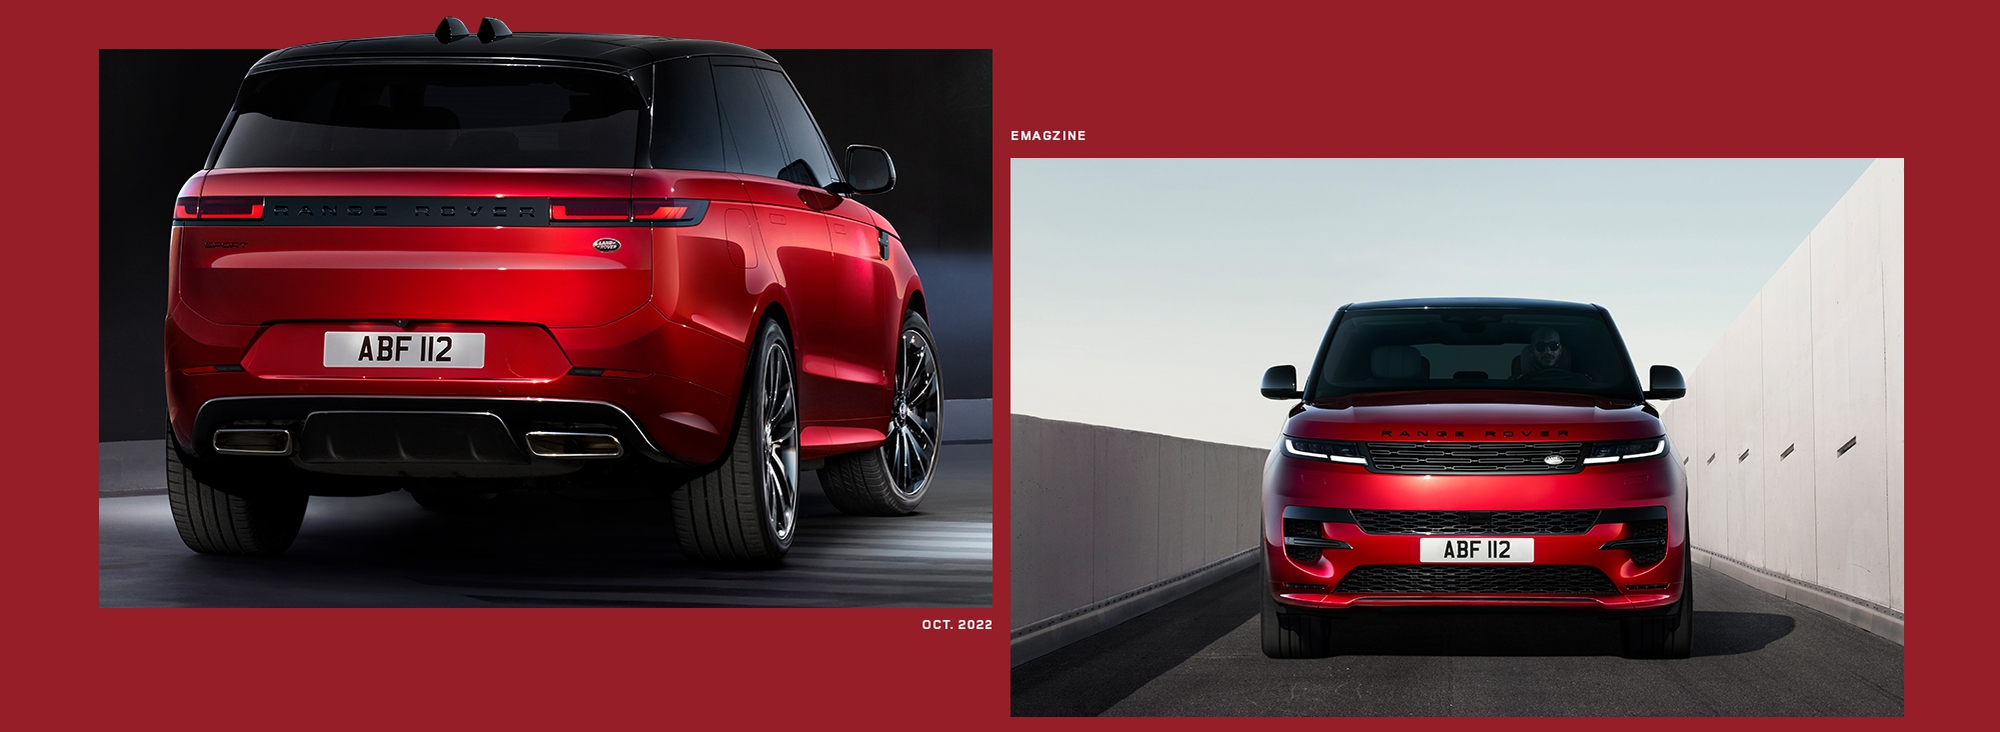 Range Rover Sport Mới - Tái định nghĩa SUV thể thao hạng sang - Ảnh 4.